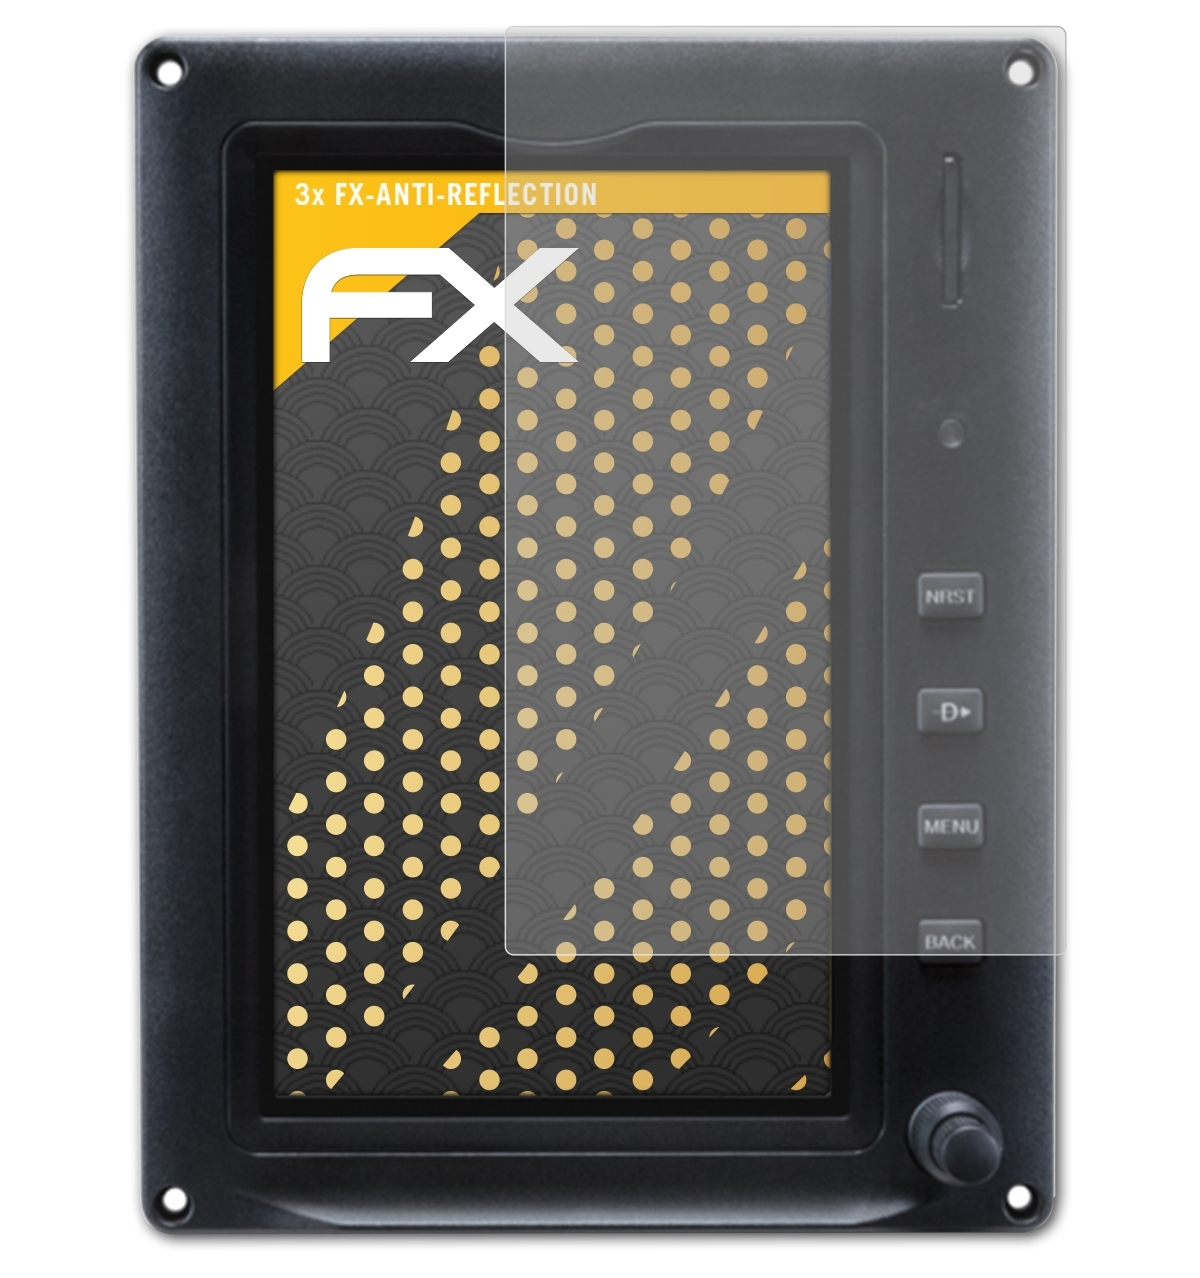 ATFOLIX 3x FX-Antireflex (7 Garmin Inch)) Displayschutz(für Touch G3X